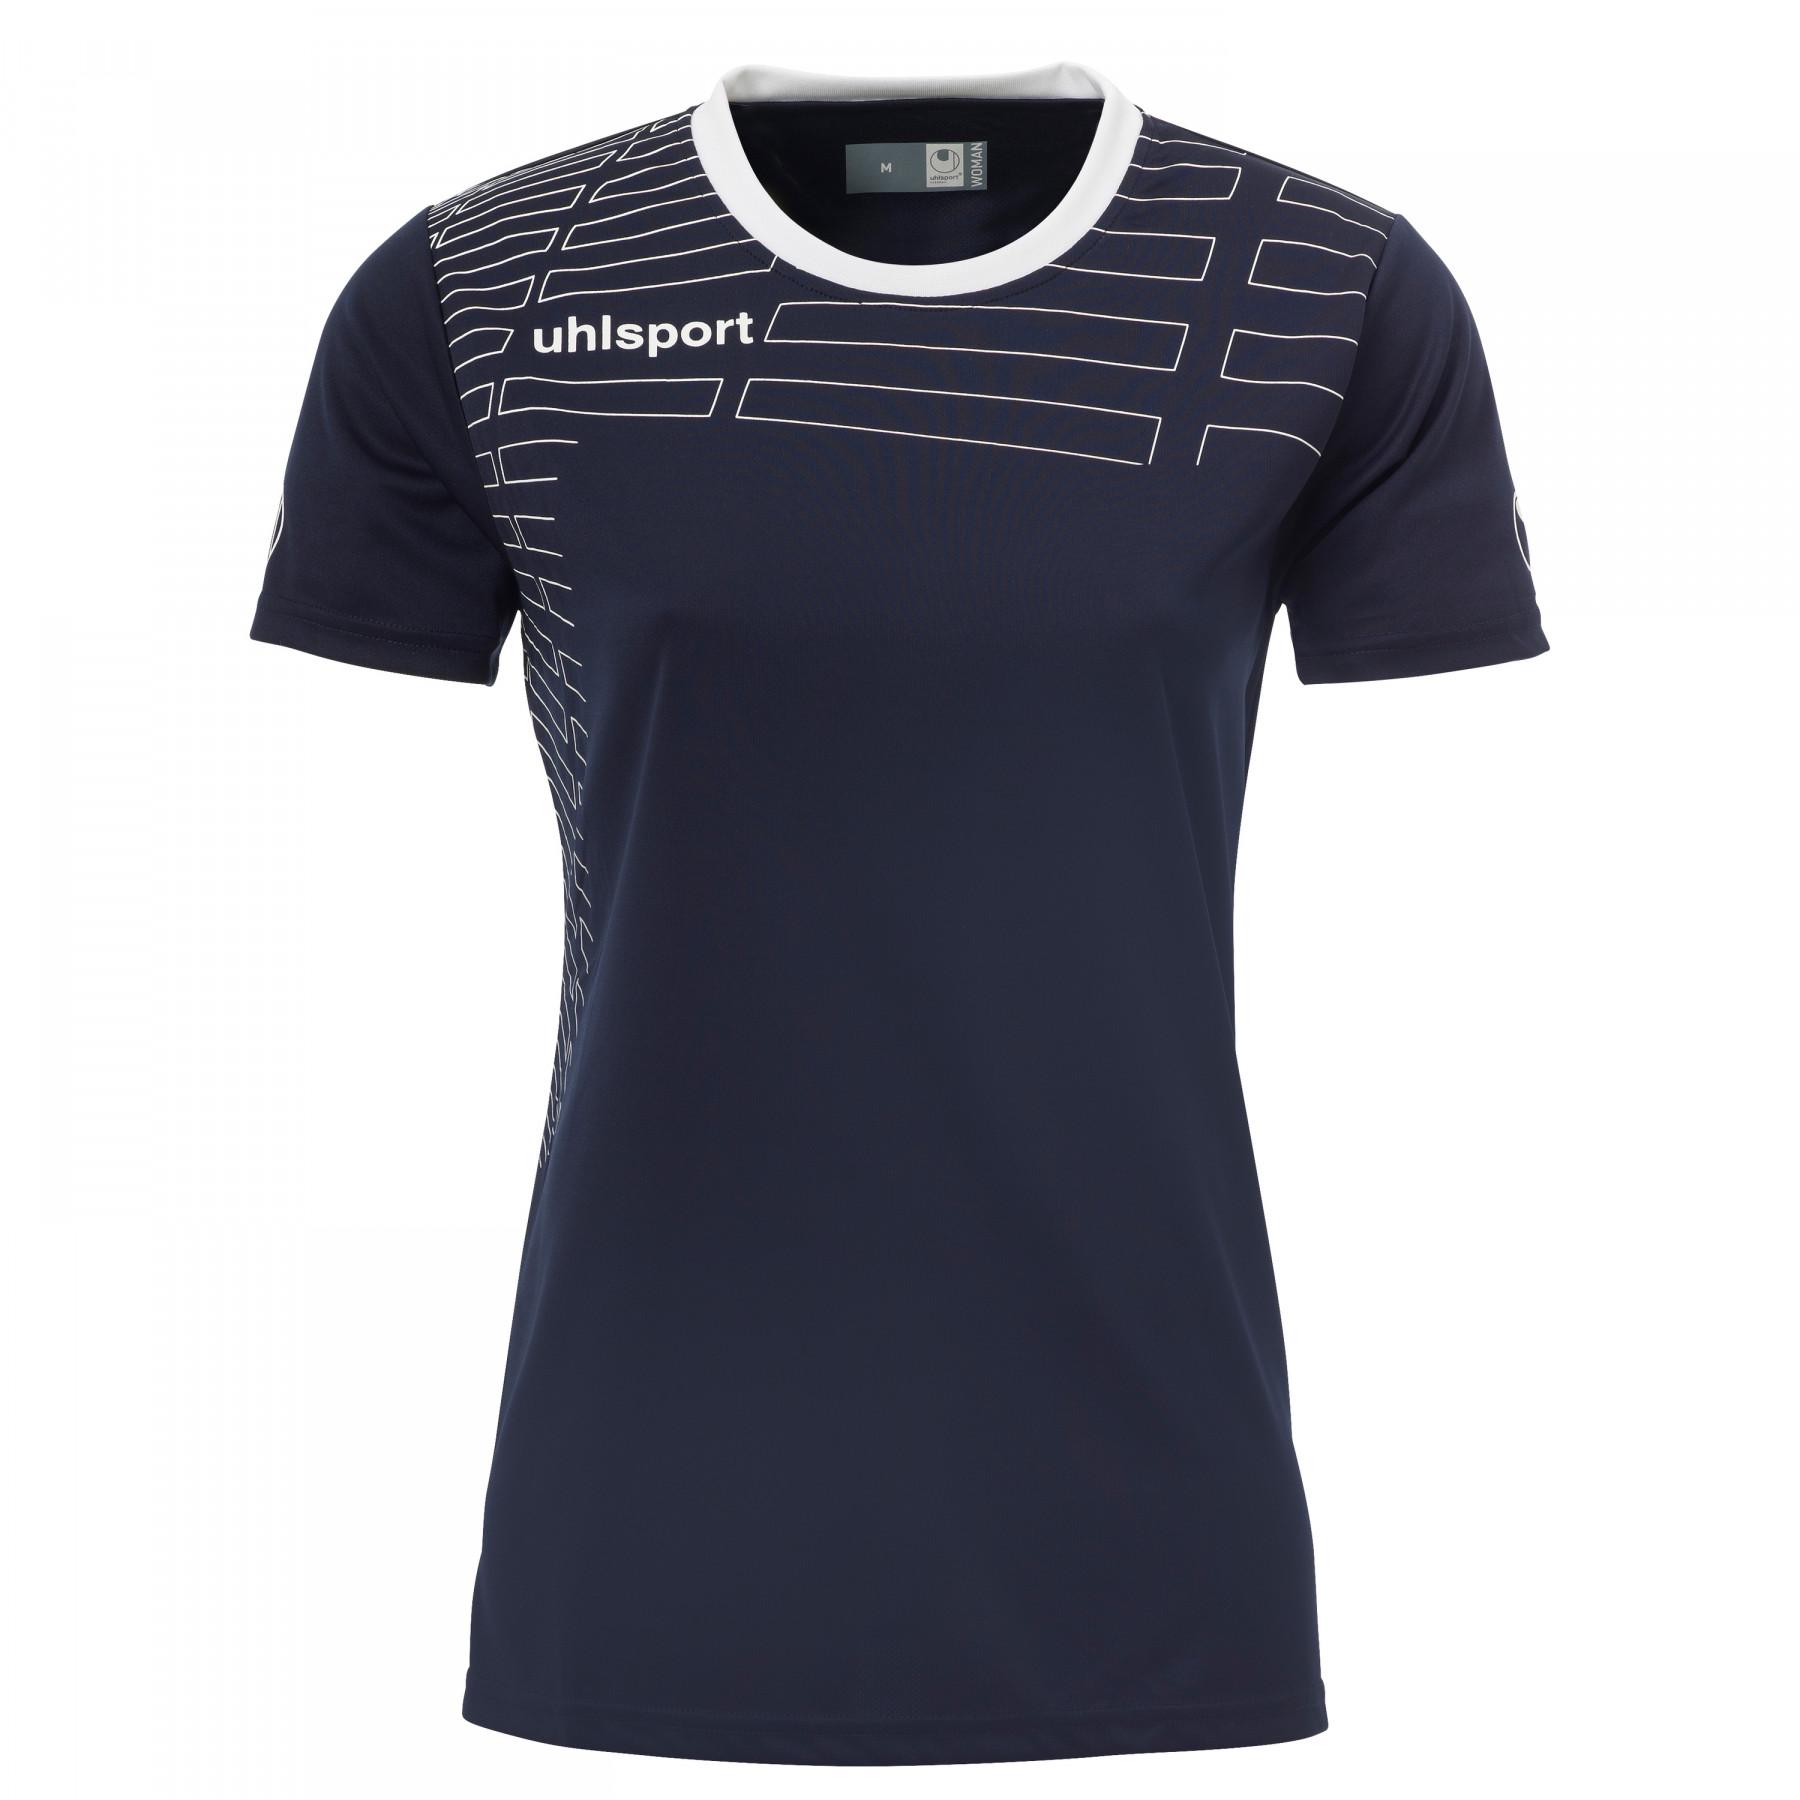 Women's swimsuit + shorts kit Uhlsport Team Kit